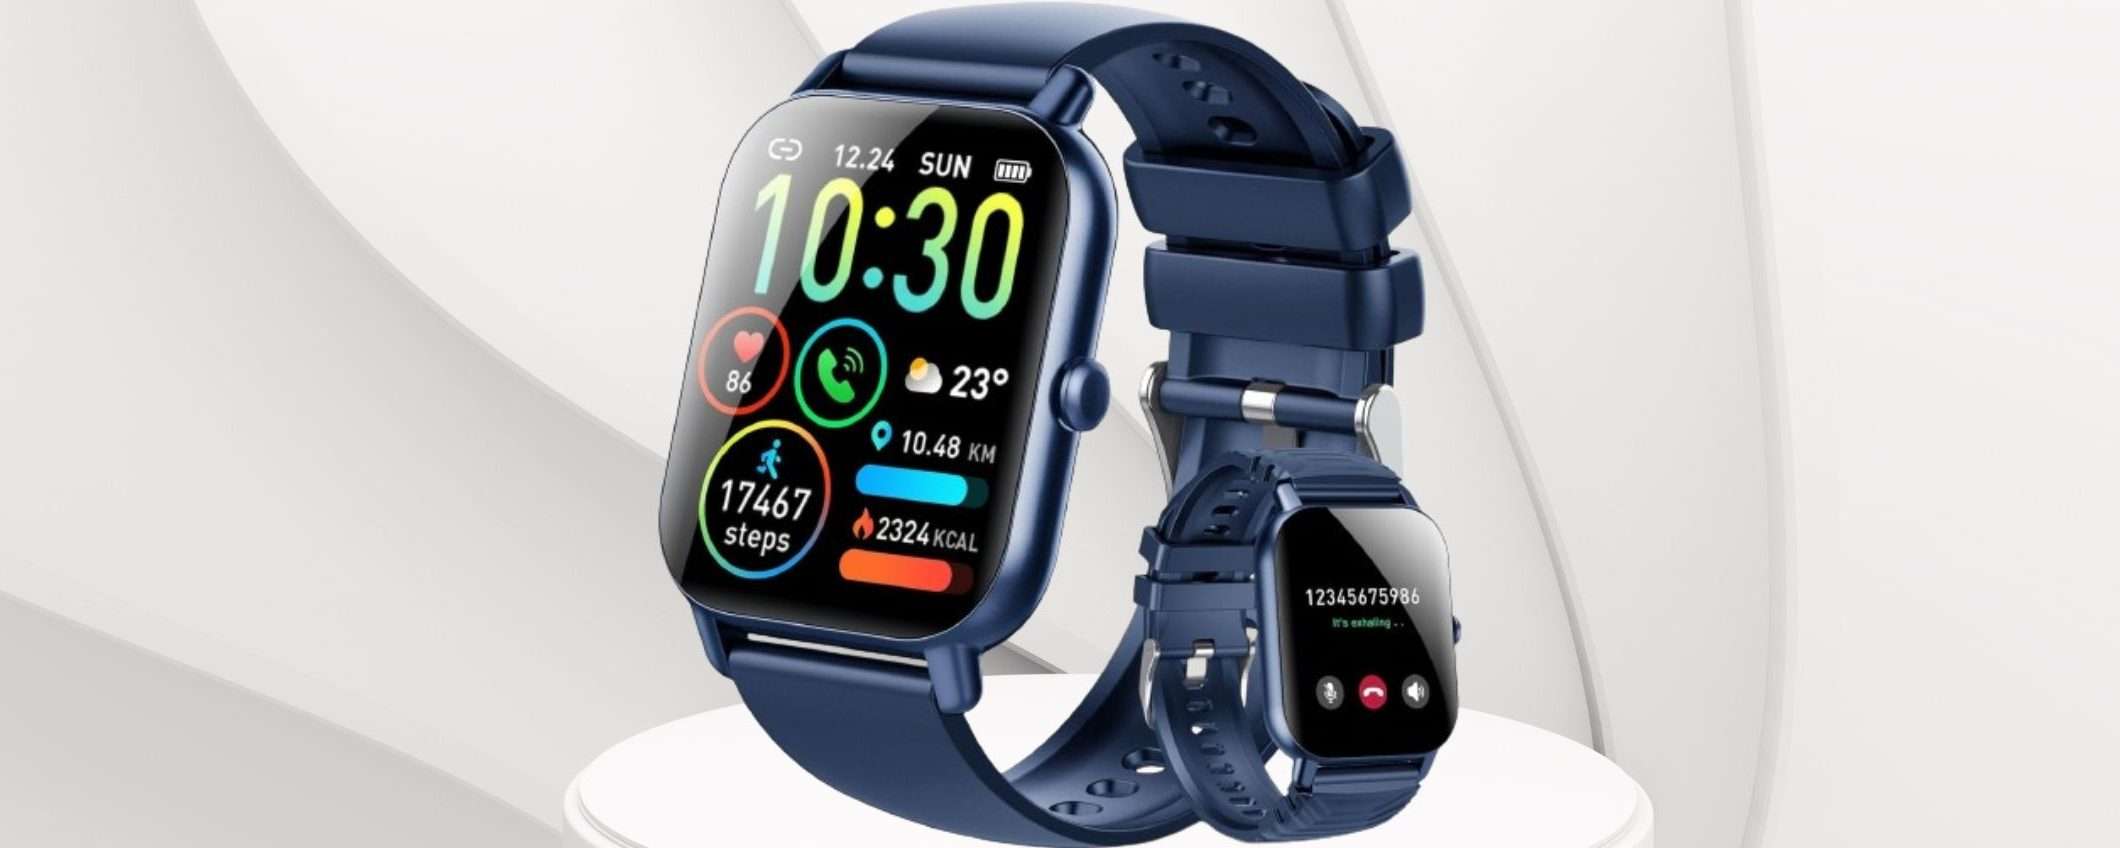 Sconto 75% per questo ECCELLENTE smartwatch a prezzo SHOCK su Amazon (19€)